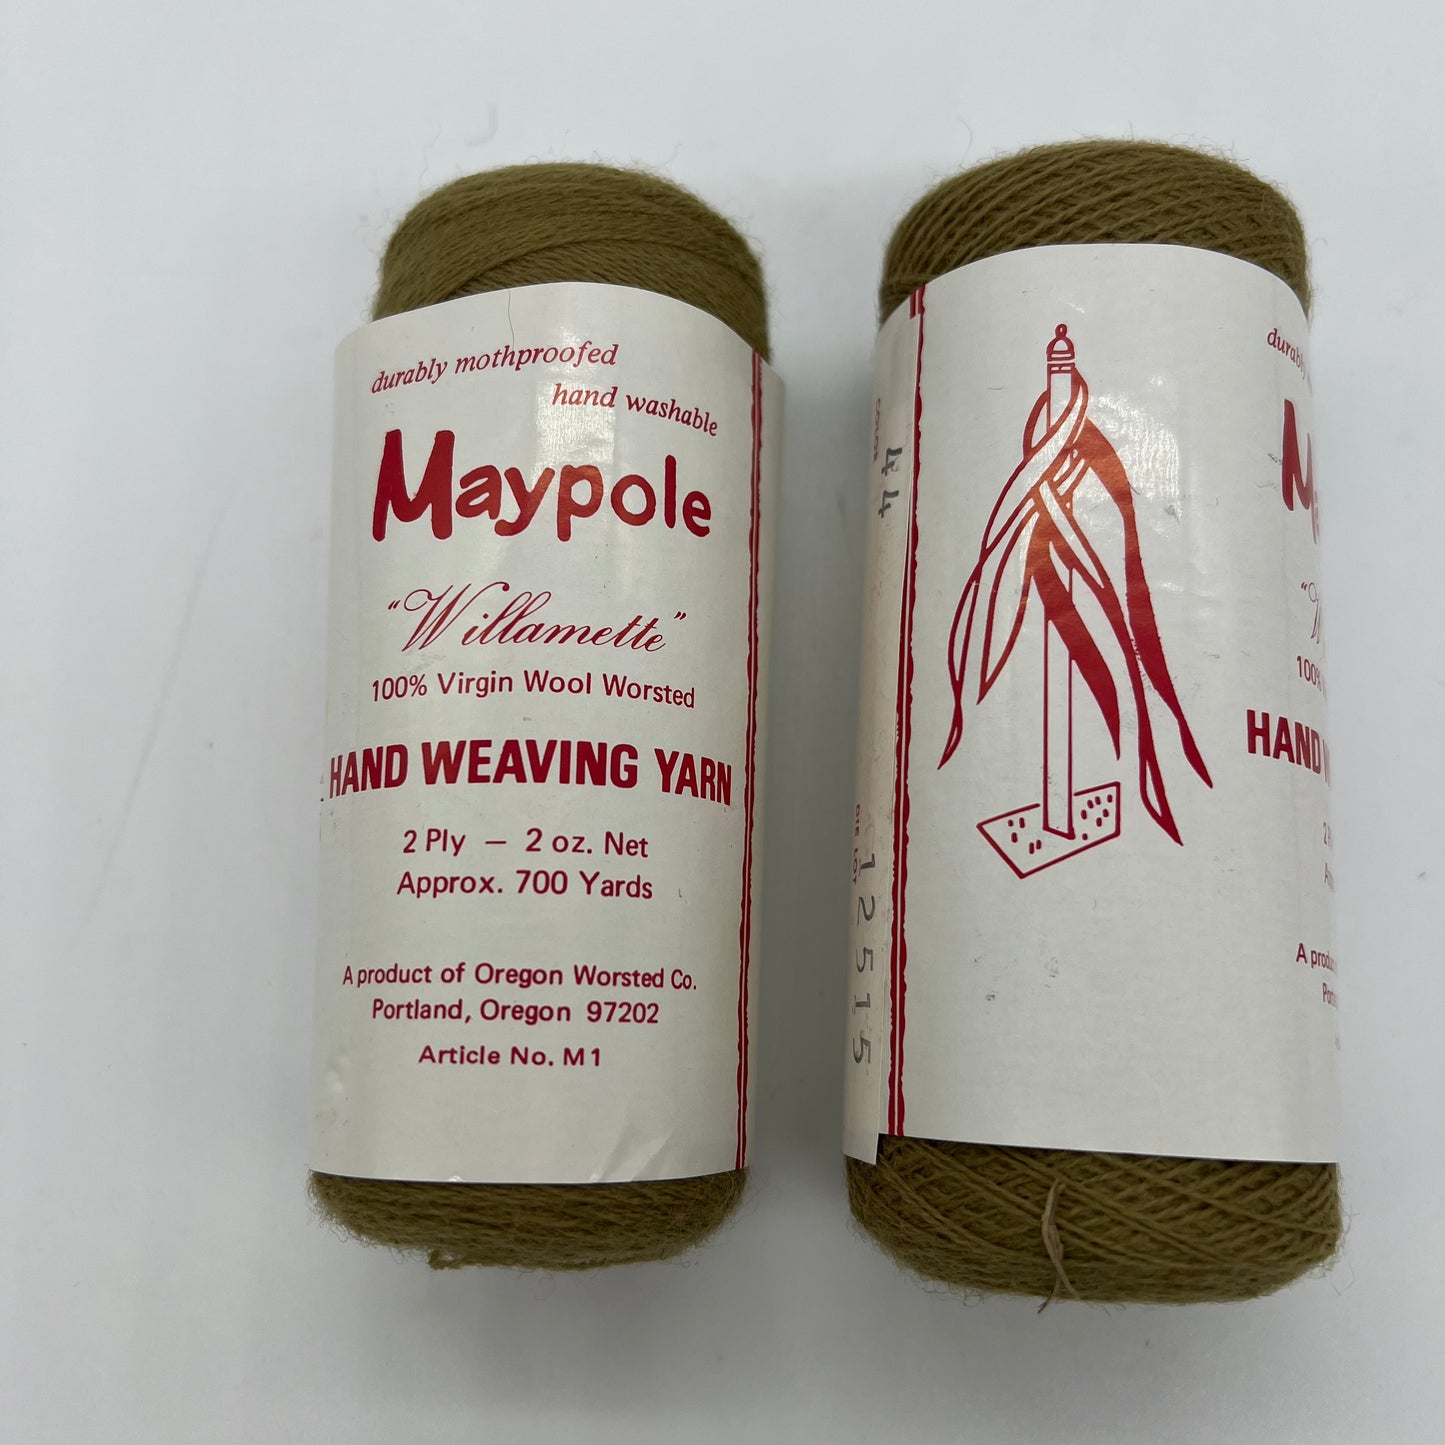 Maypole Willamette Moss Green Yarn